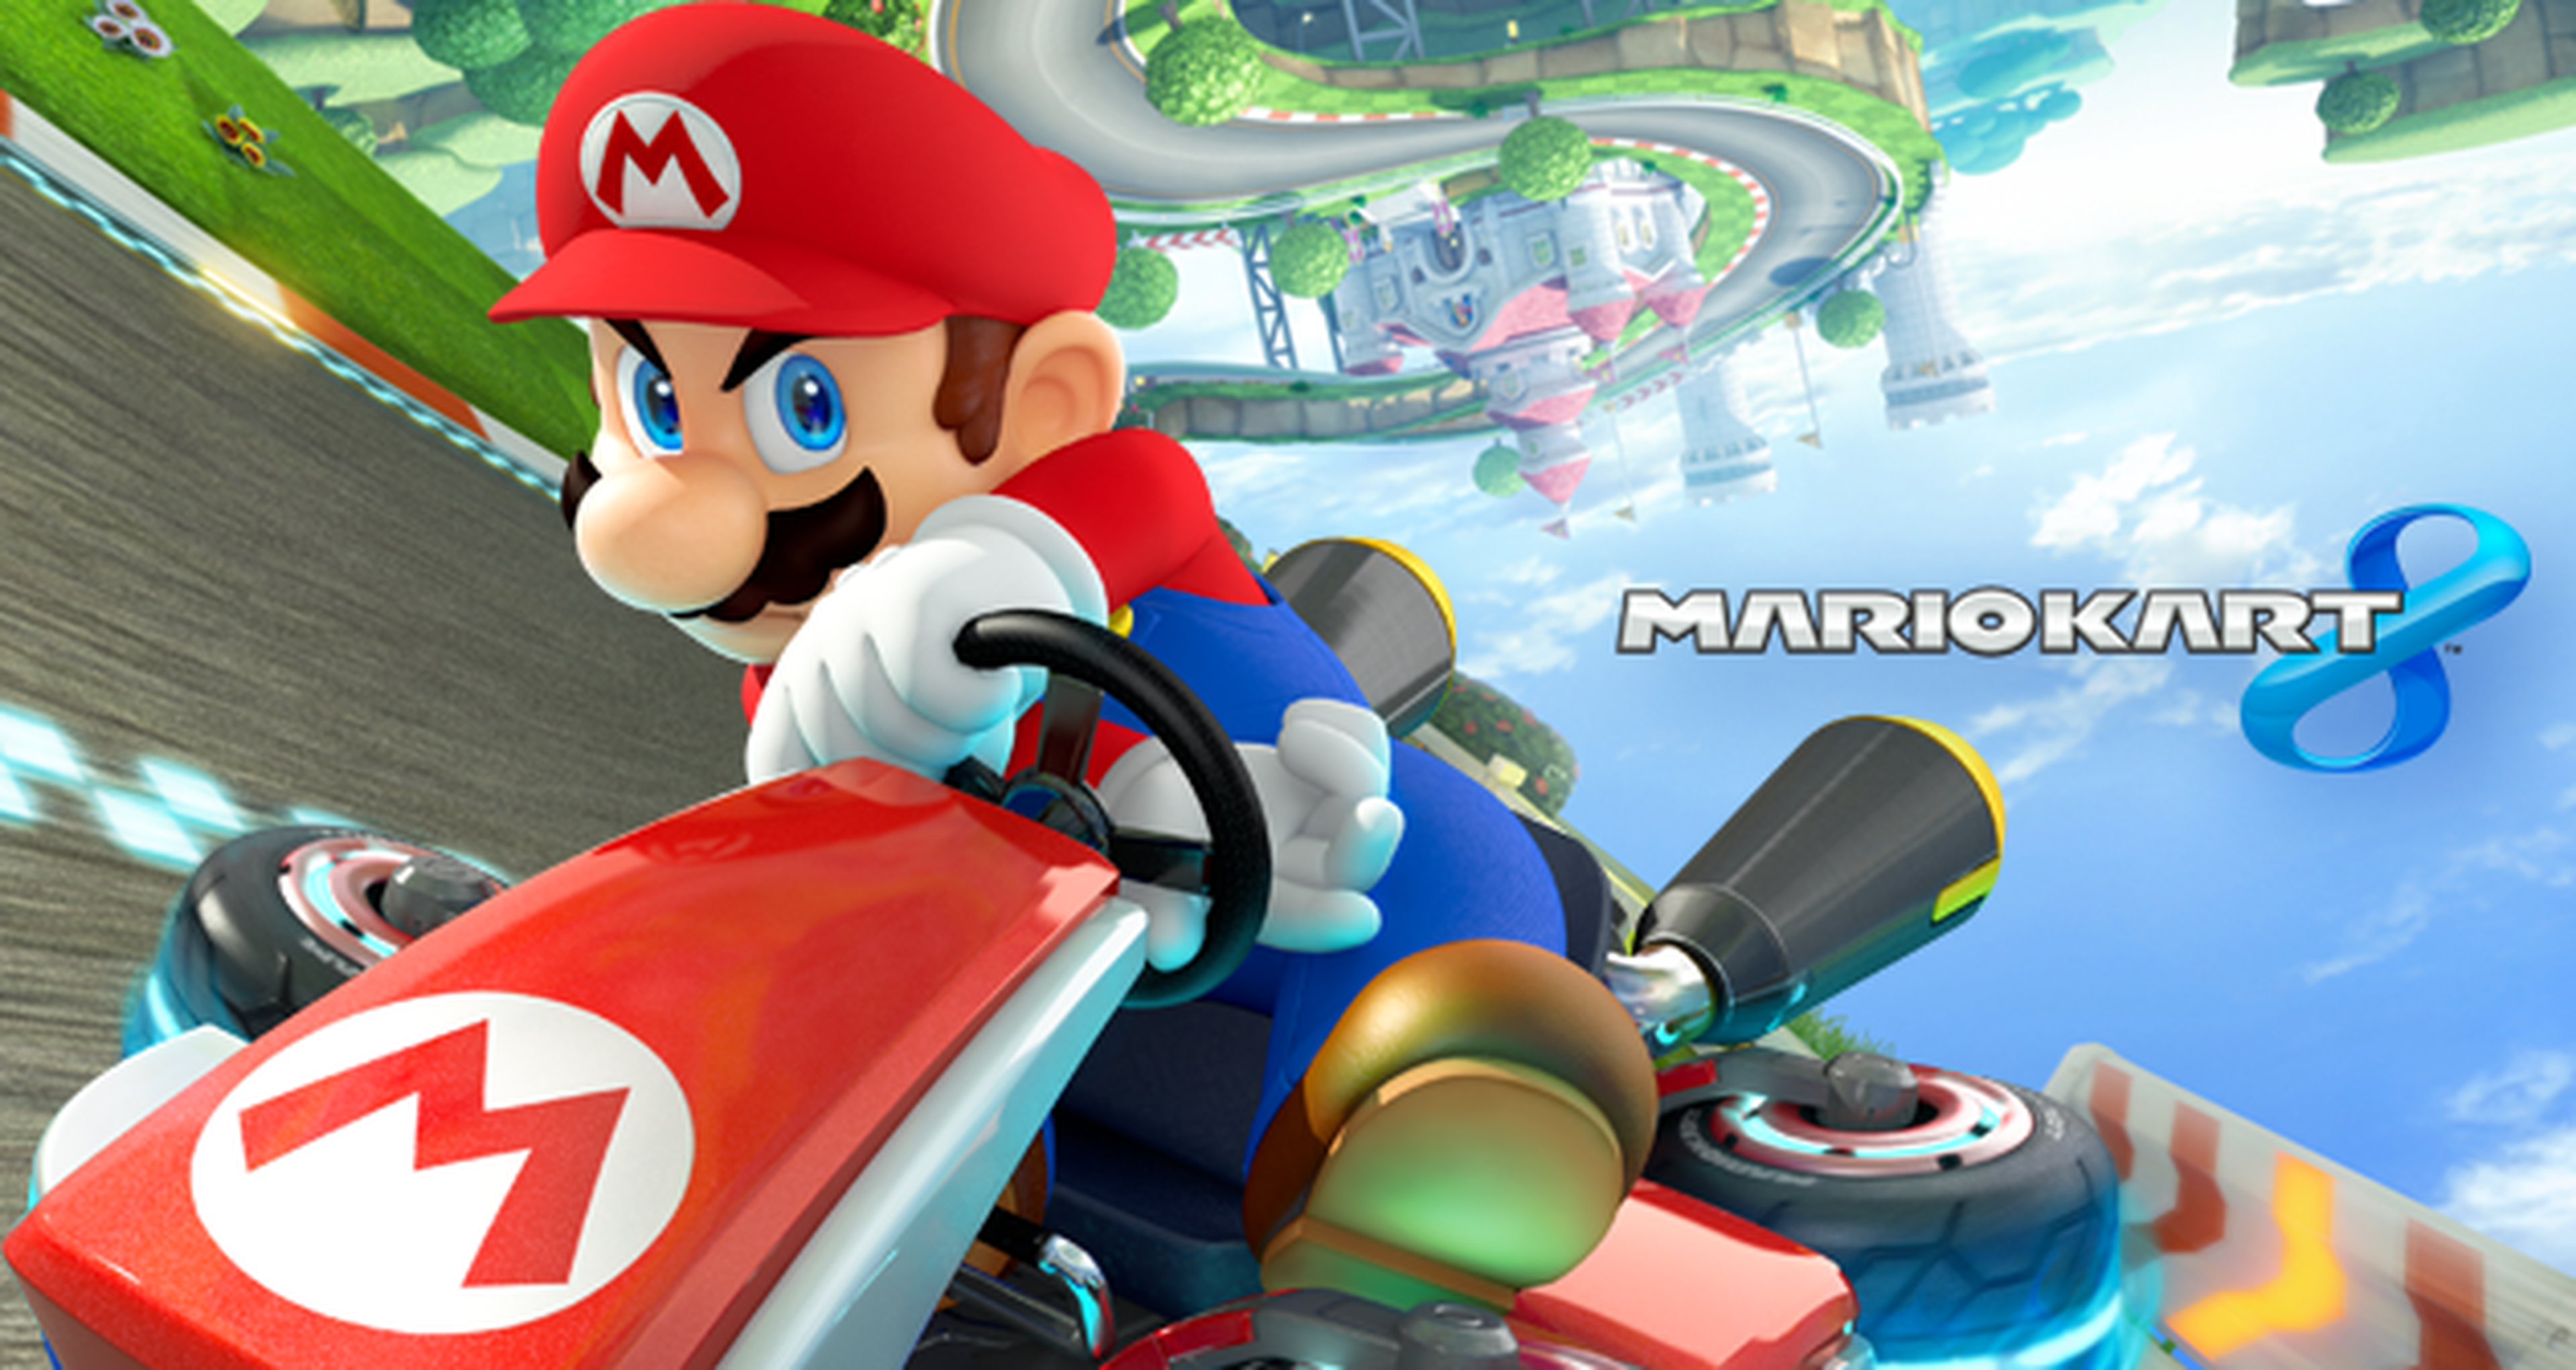 Torneo Mario Kart 8 a 200cc: ¡Ya tenemos al campeón de nuestra escudería!